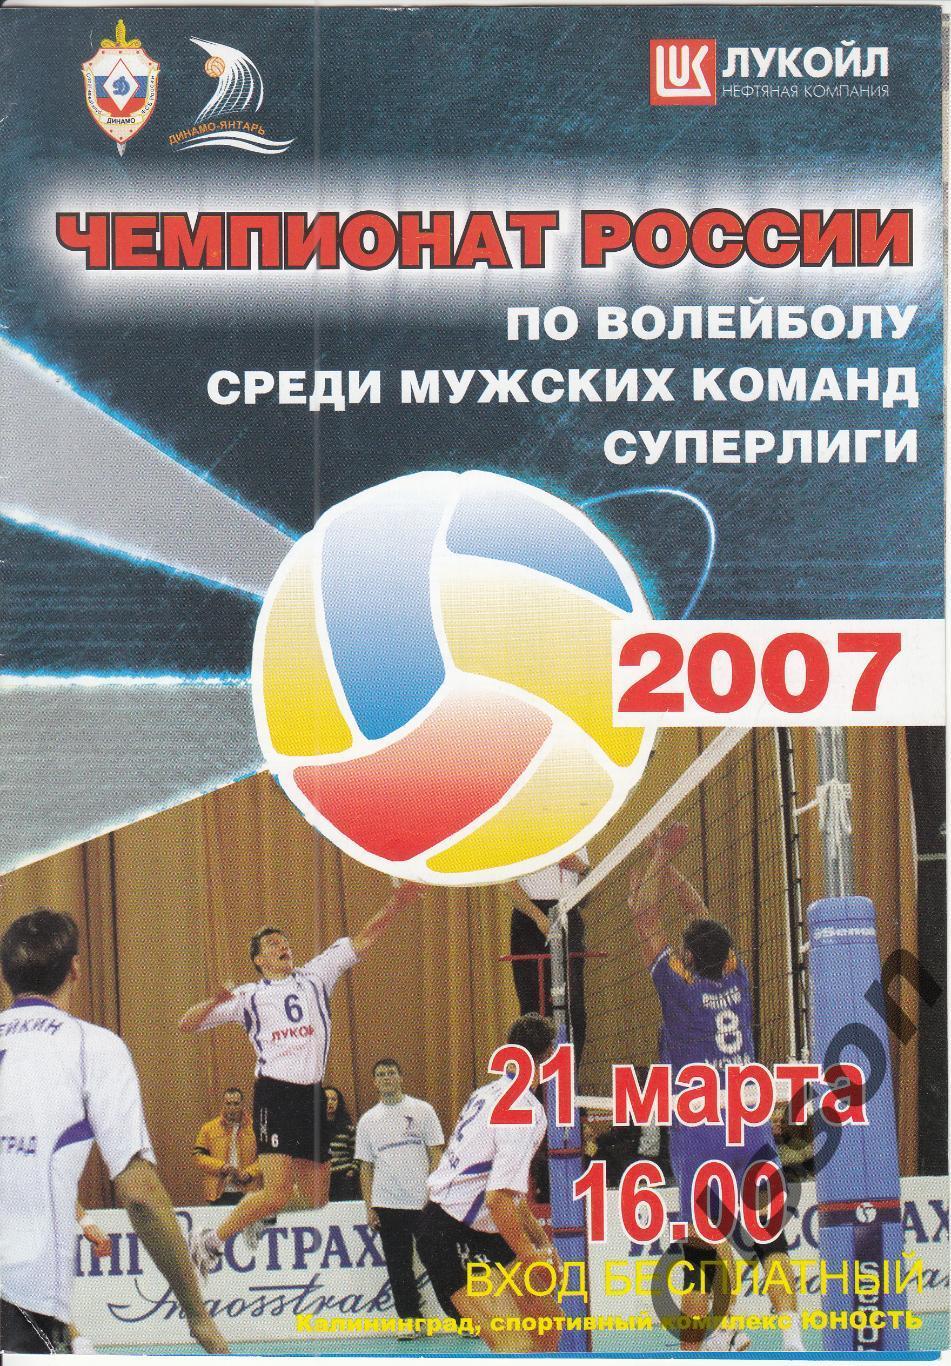 Динамо-Янтарь Калининград - Факел Новый Уренгой 21.03.2007